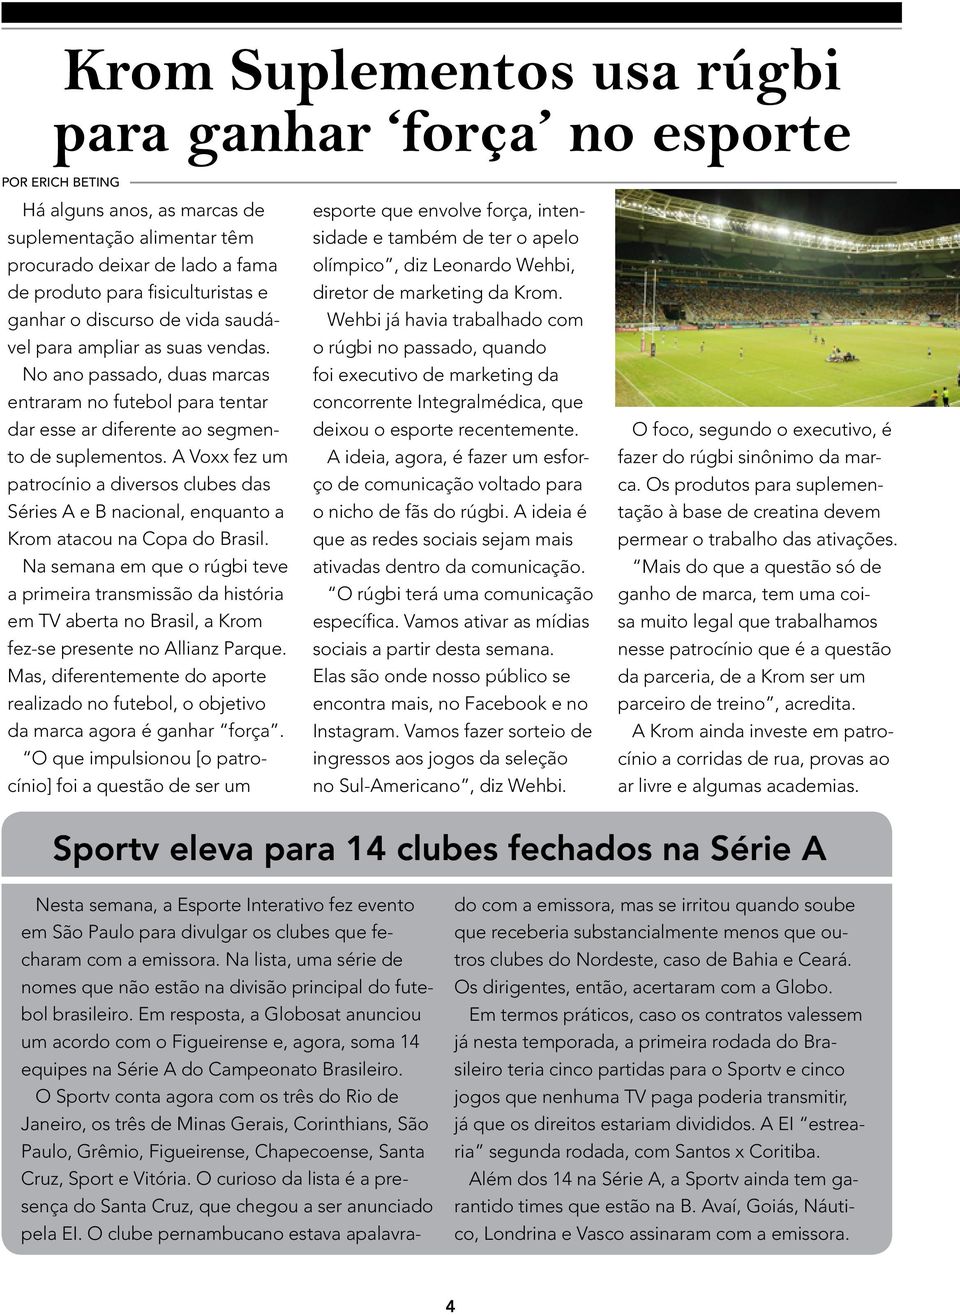 A Voxx fez um patrocínio a diversos clubes das Séries A e B nacional, enquanto a Krom atacou na Copa do Brasil.